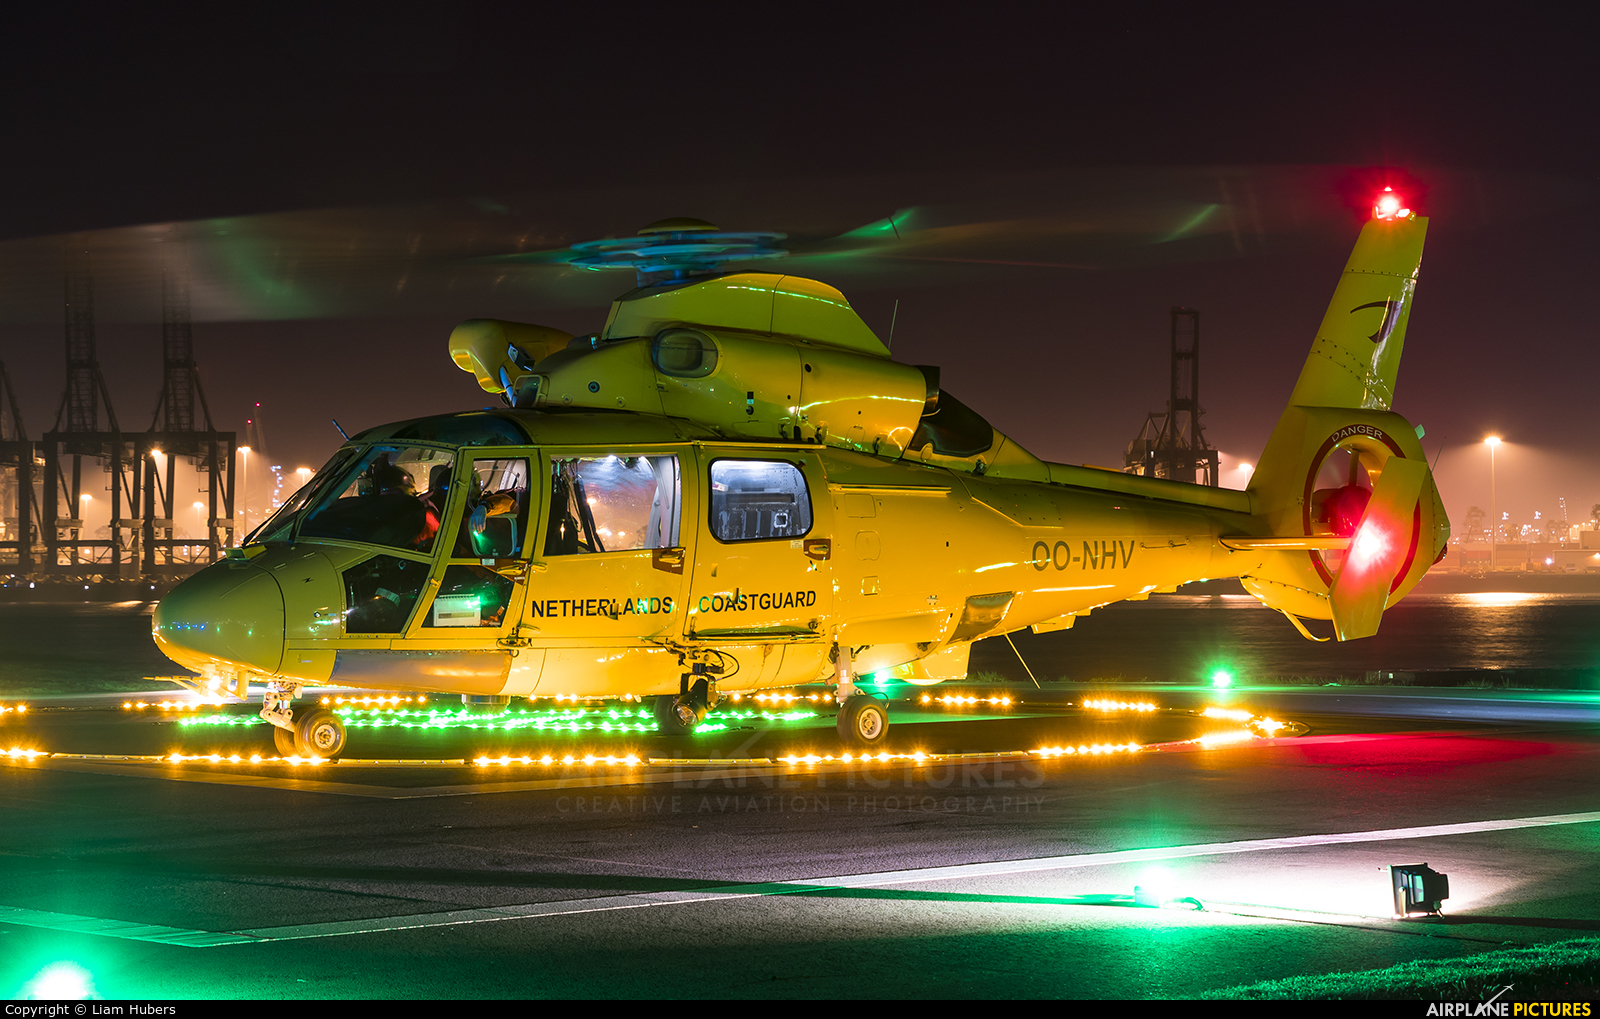 NHV - Noordzee Helikopters Vlaanderen OO-NHV aircraft at Off Airport - Netherlands